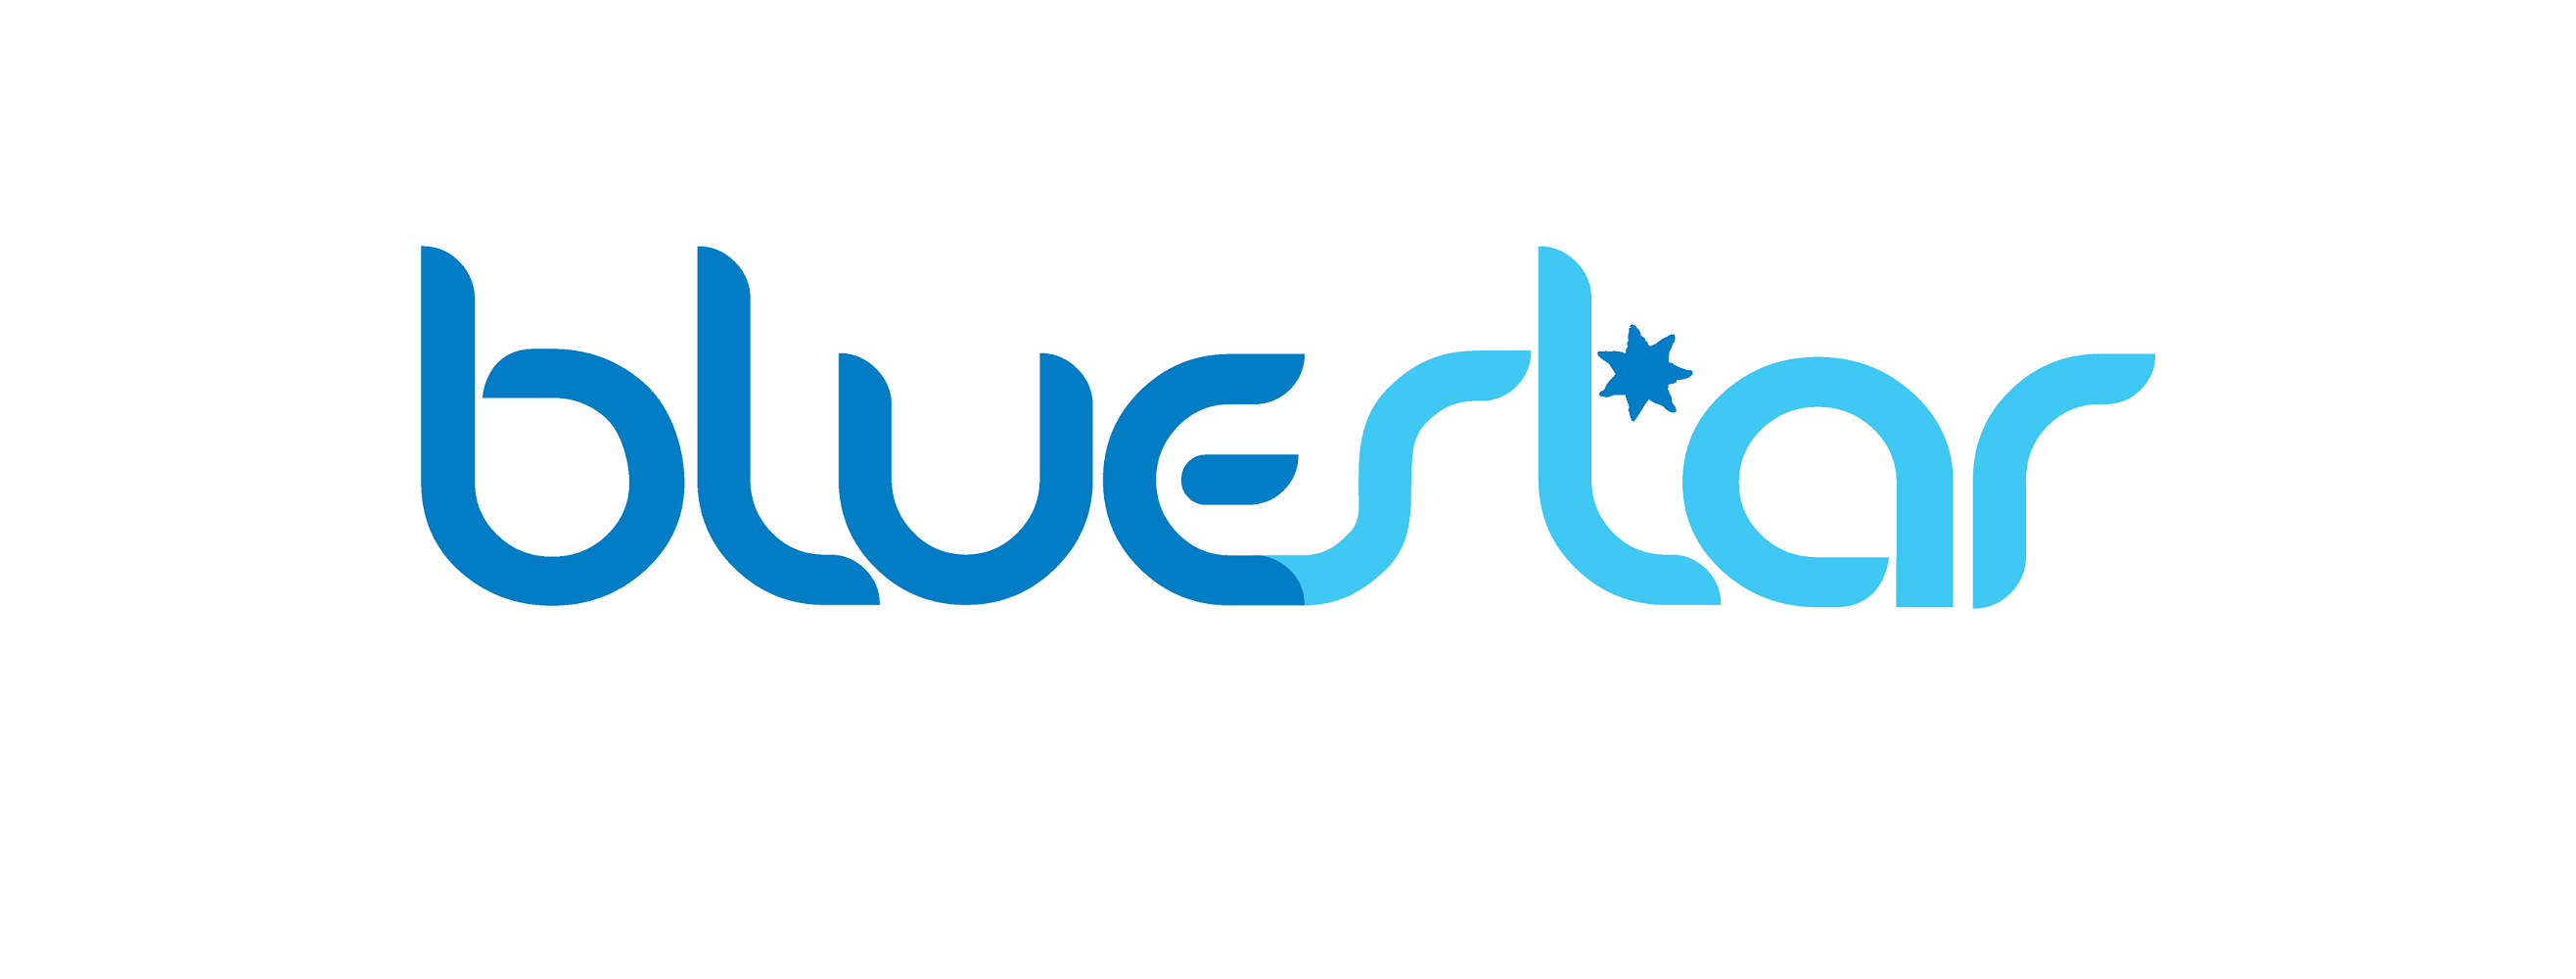 Names of Blue People Logo - About Bluestar - Bluestar